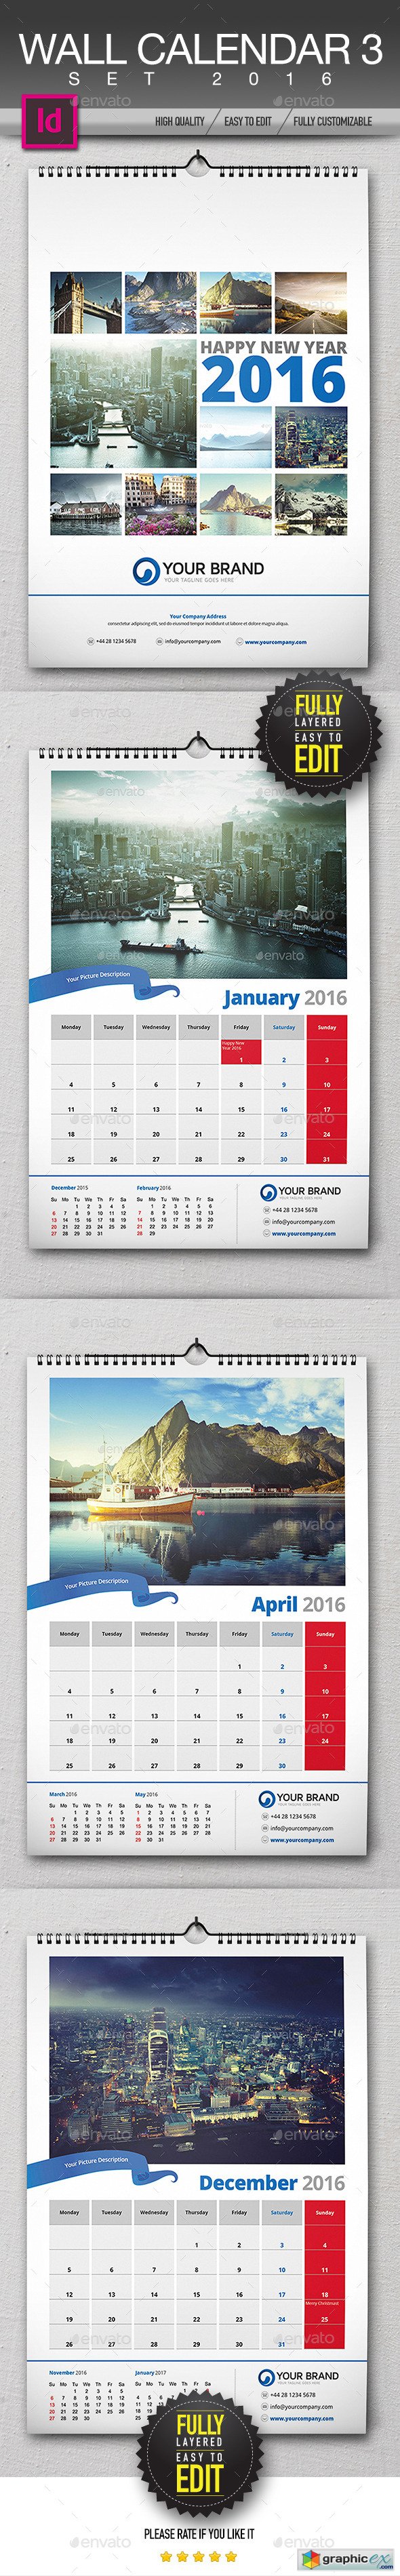 Wall Calendar 2016 13122707